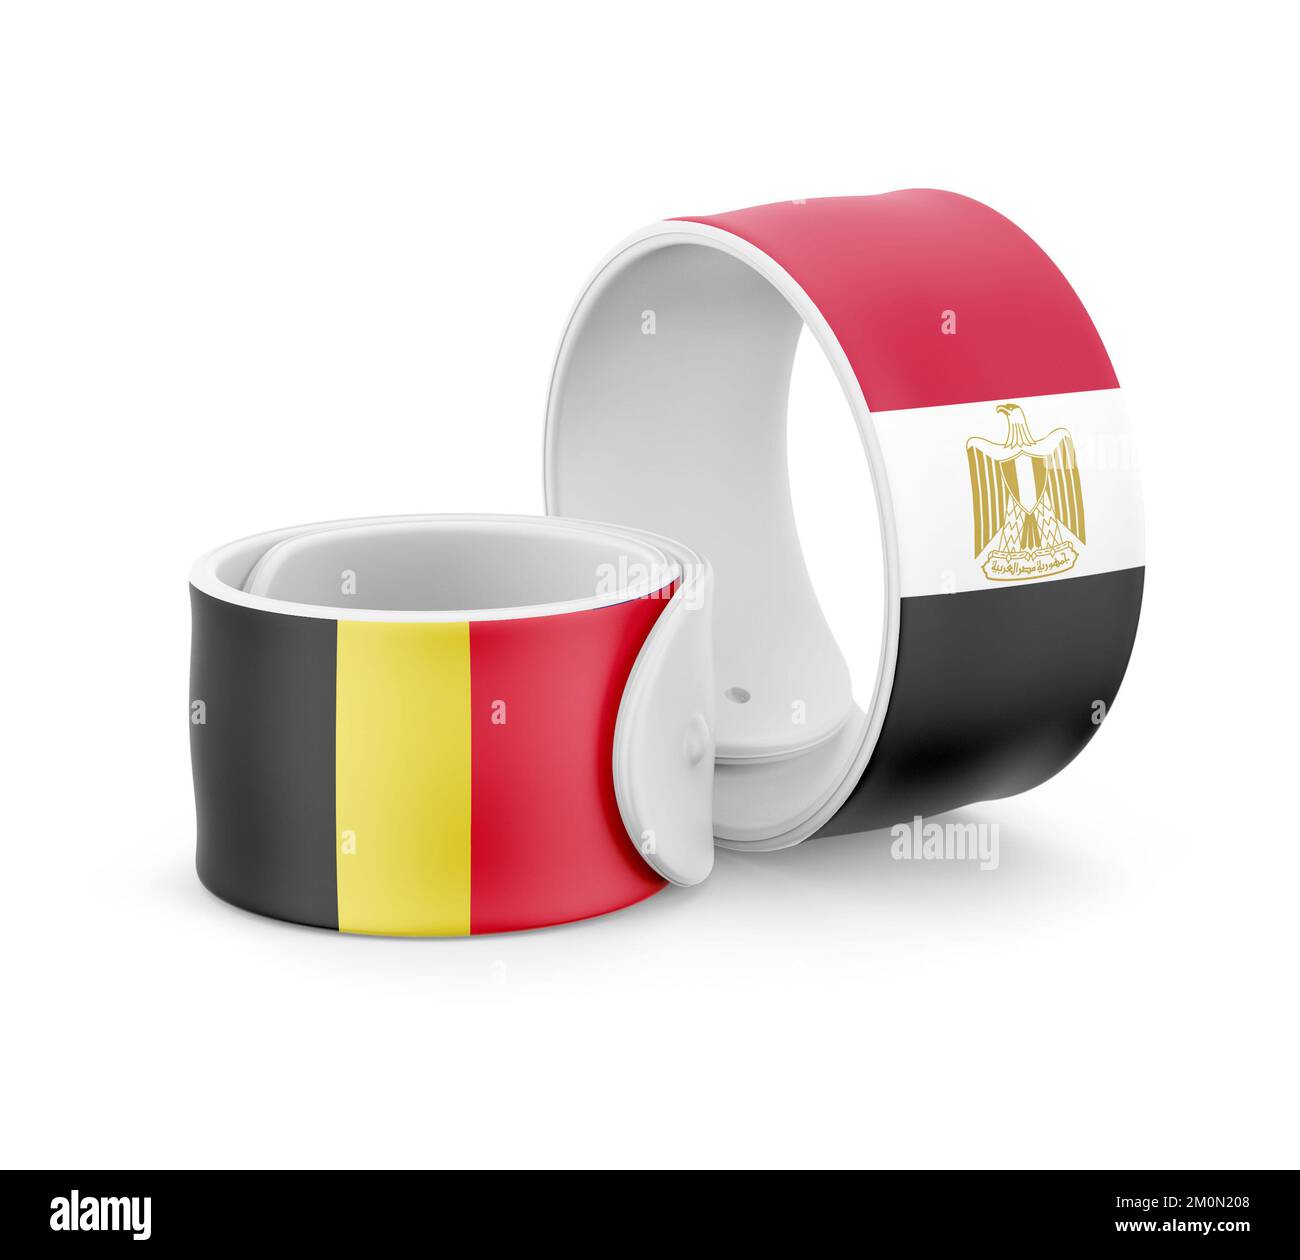 Egypt National Flag for friendship on Bracelet Stock Photo